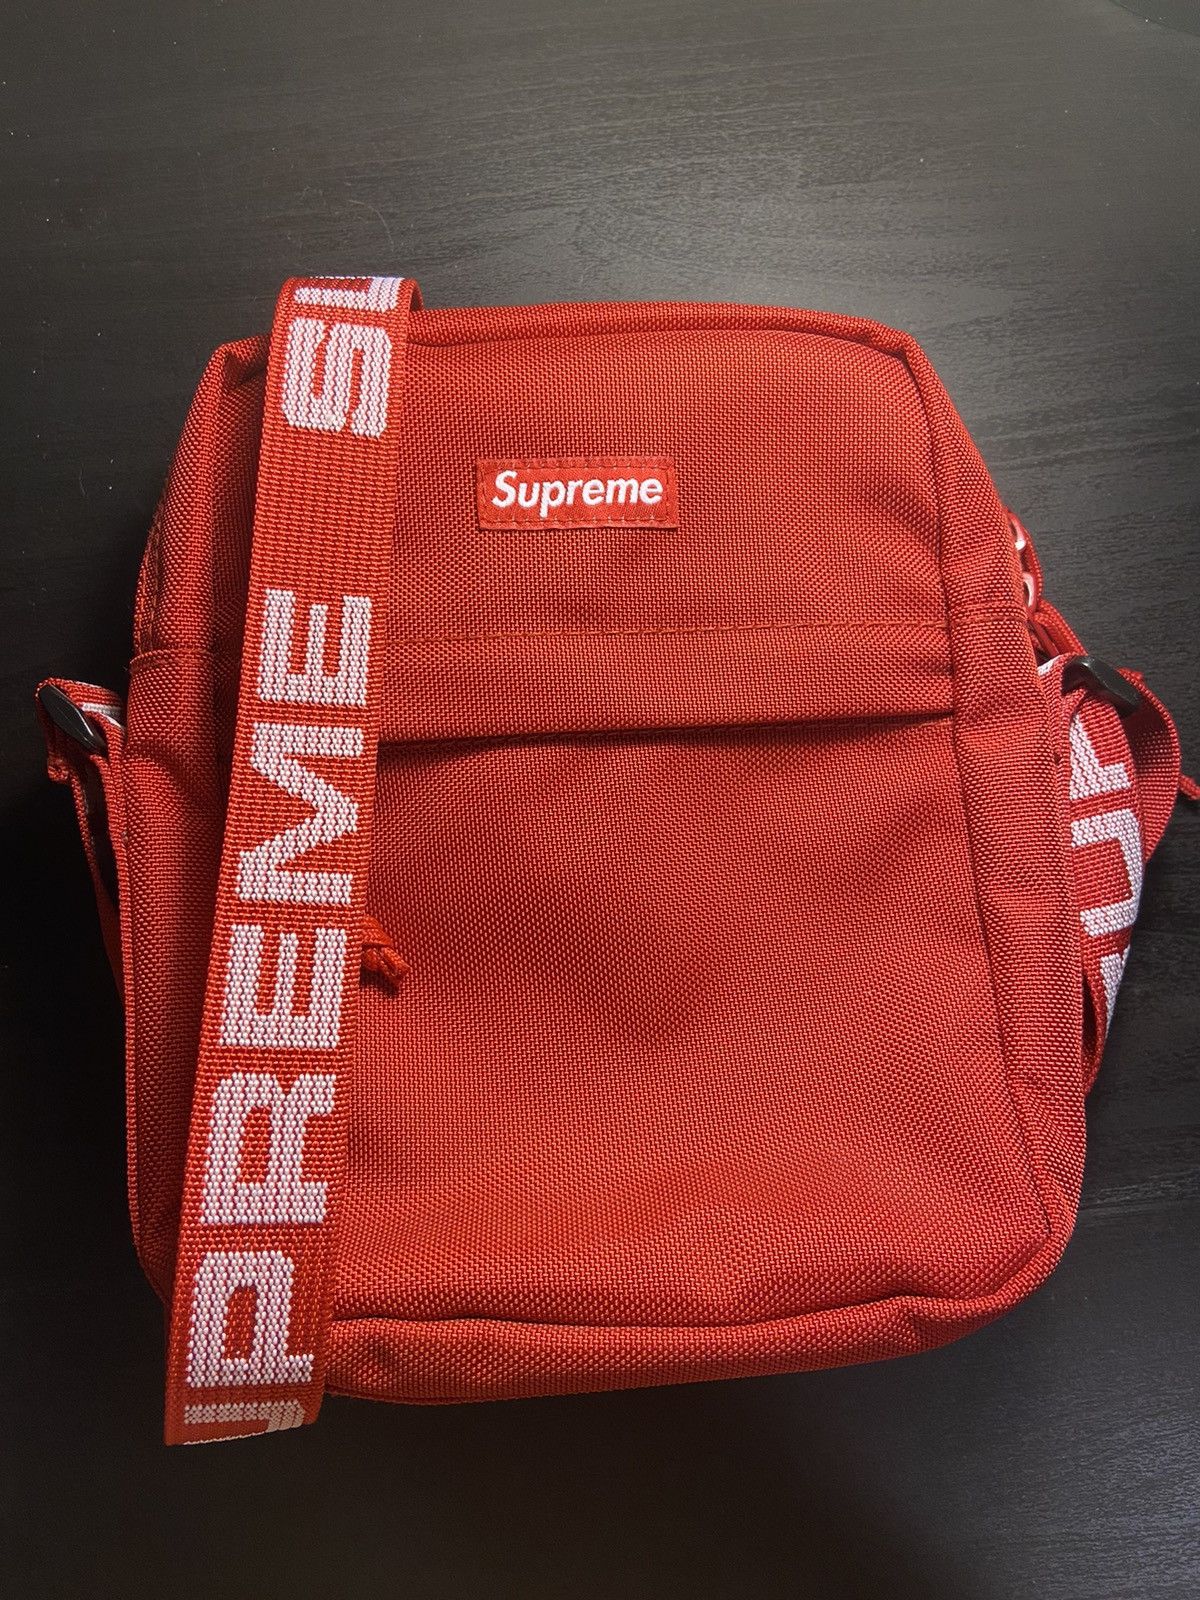 Supreme Supreme Shoulder Bag Red (SS18) | Grailed